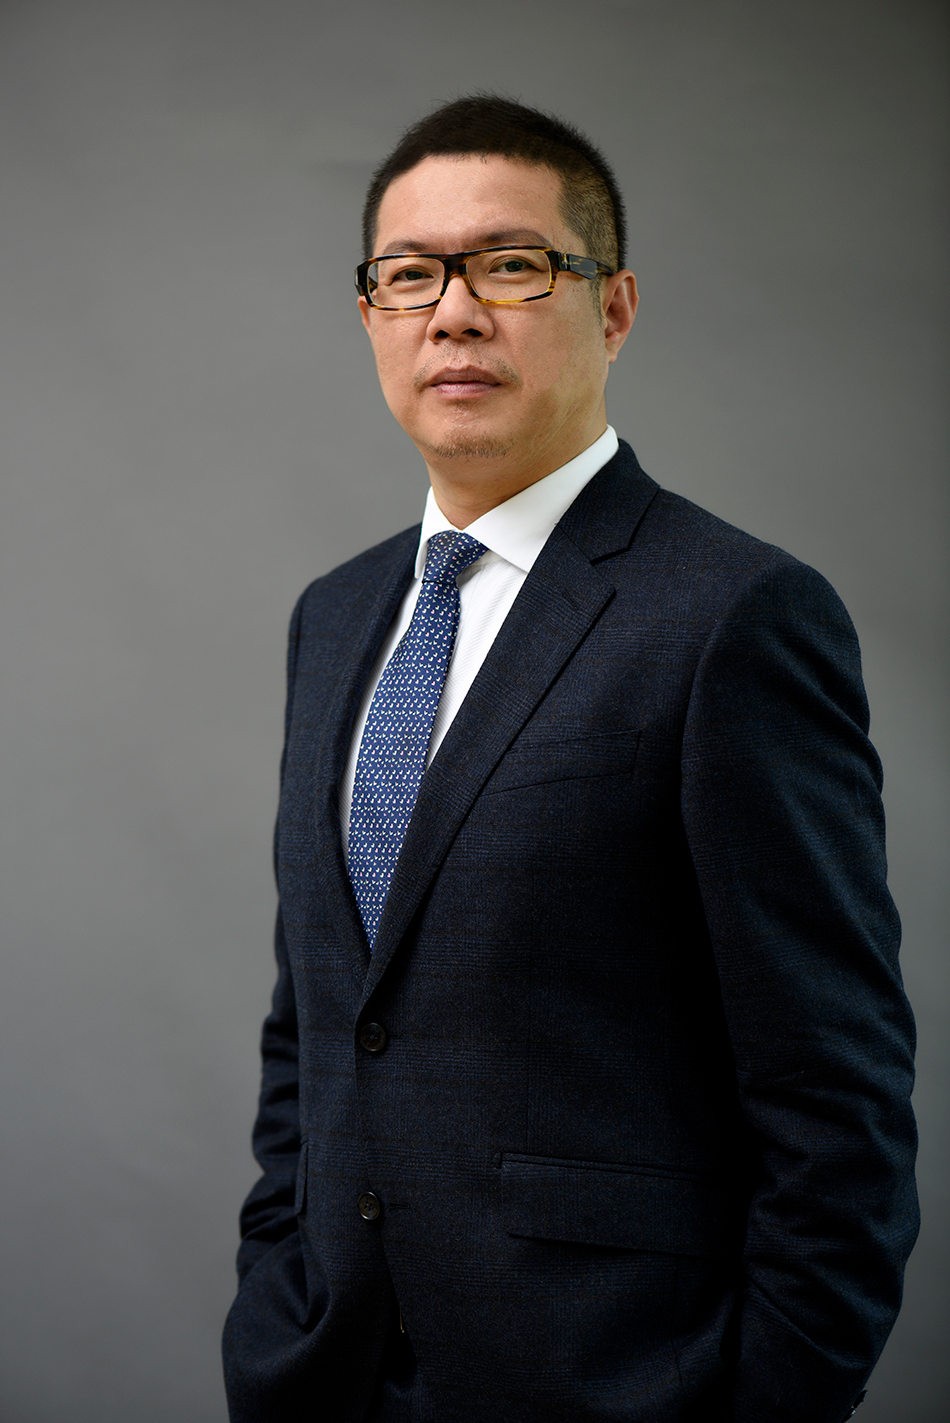 阿斯利康全球执行副总裁、国际业务及中国总裁王磊